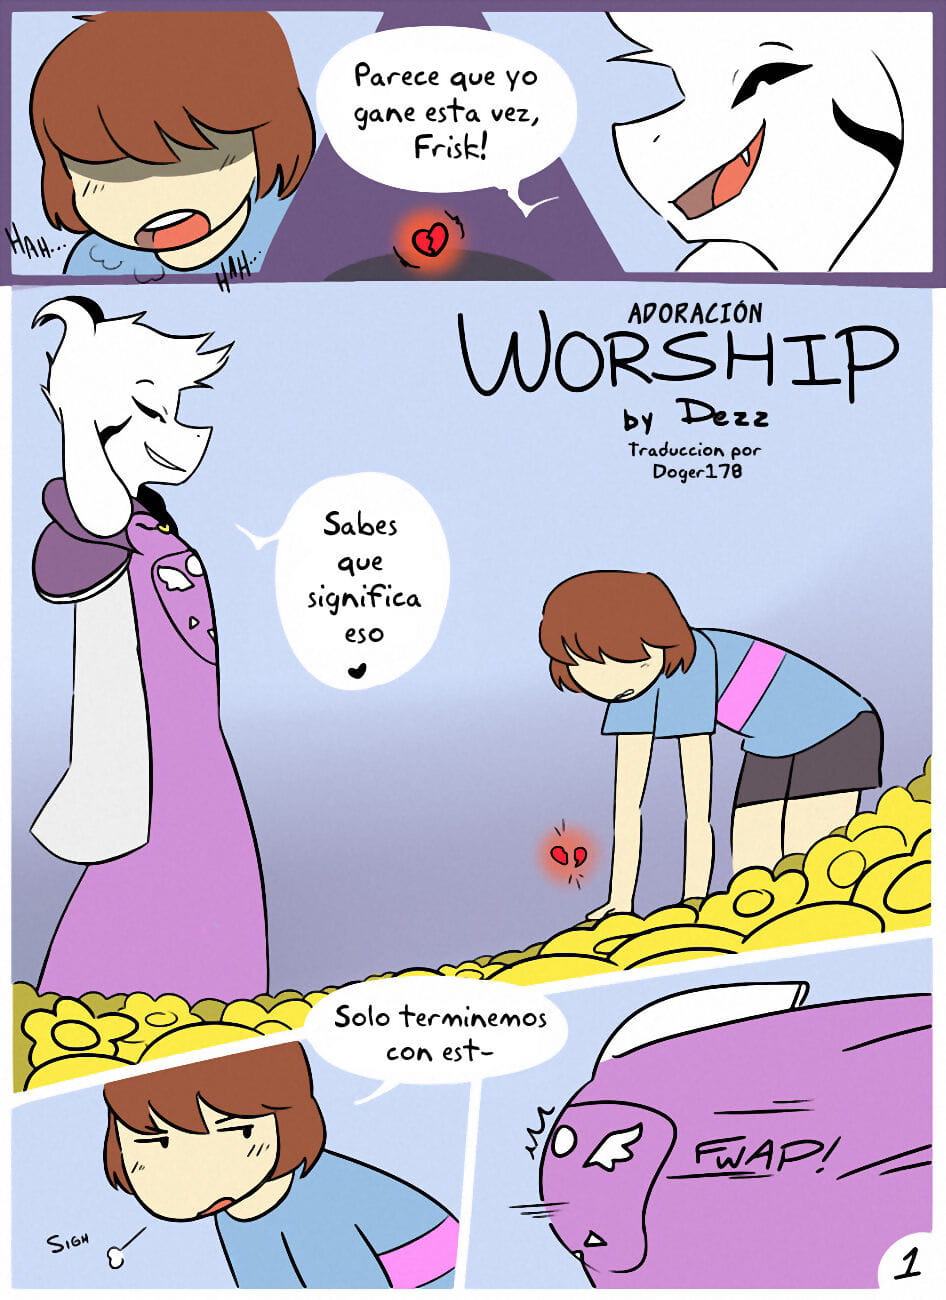 la adoración